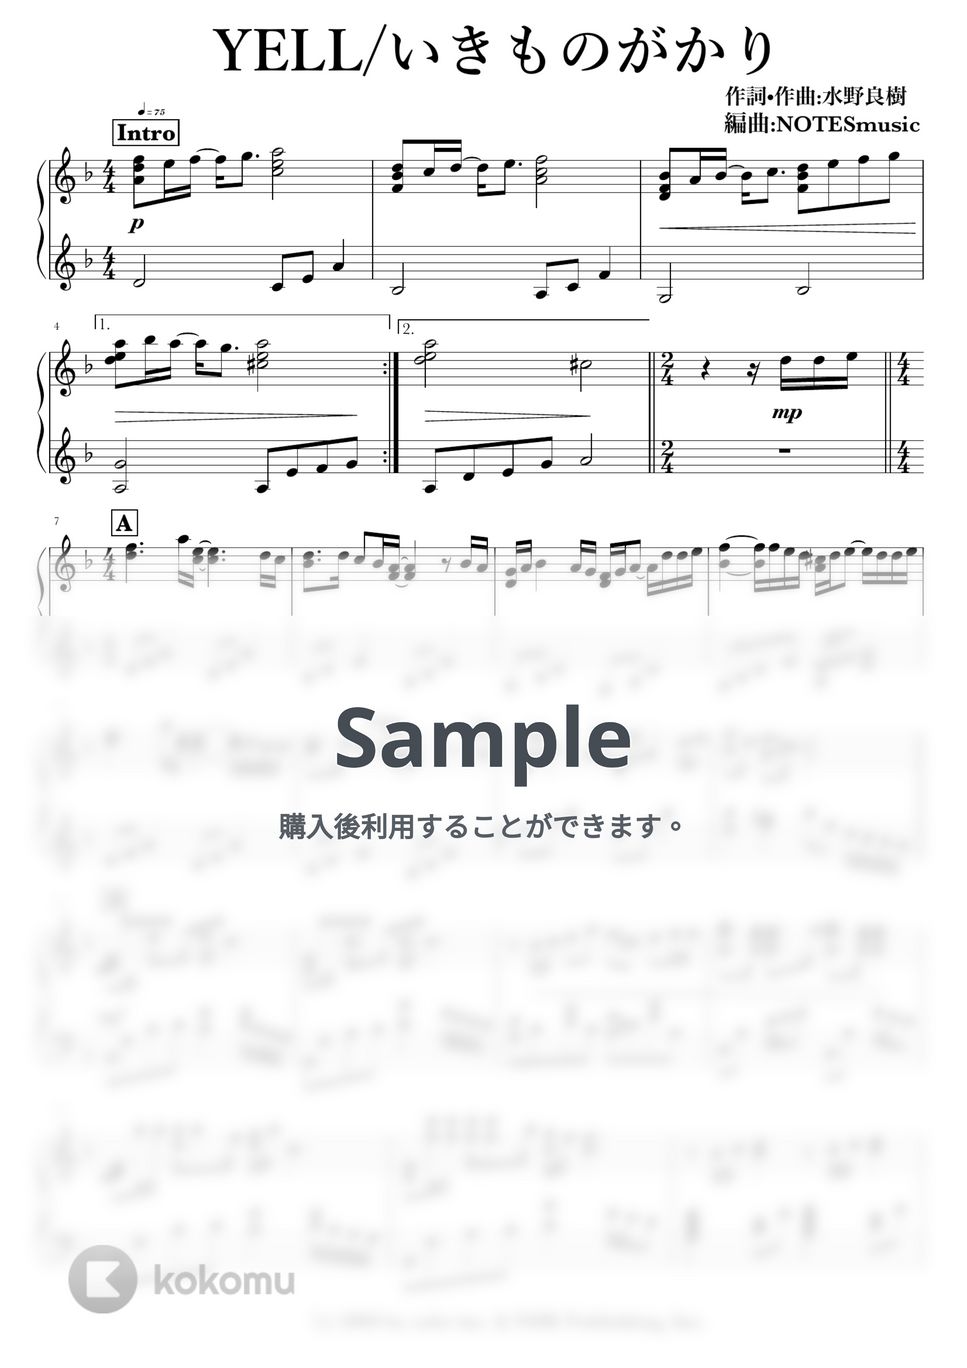 いきものがかり - YELL by NOTES music